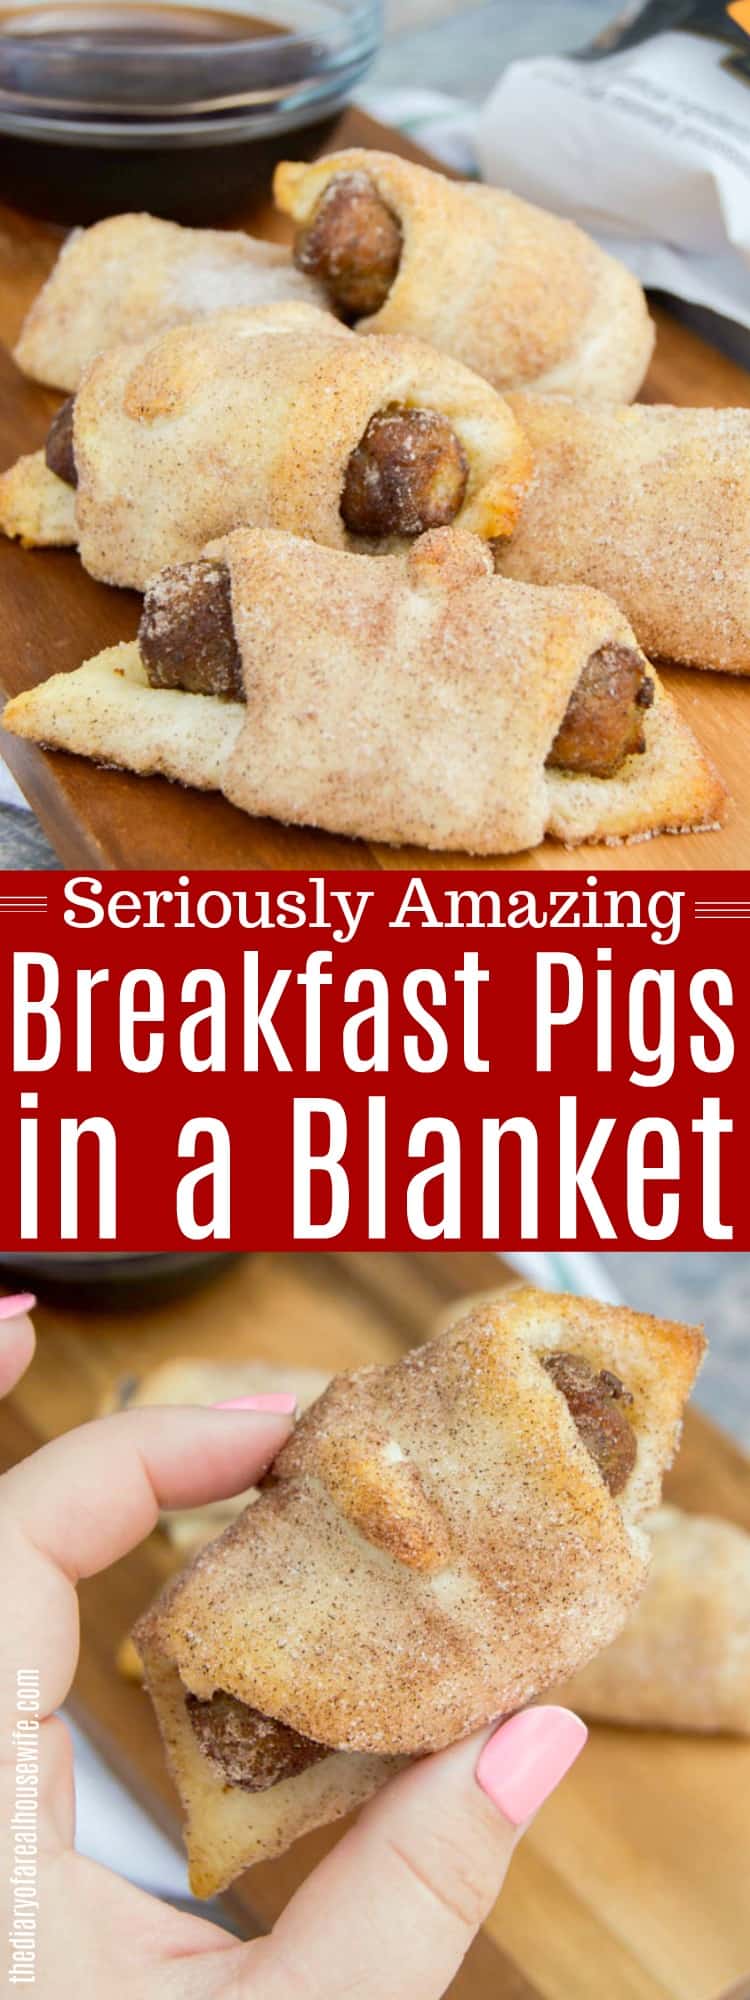 Breakfast Pigs in a Blanket